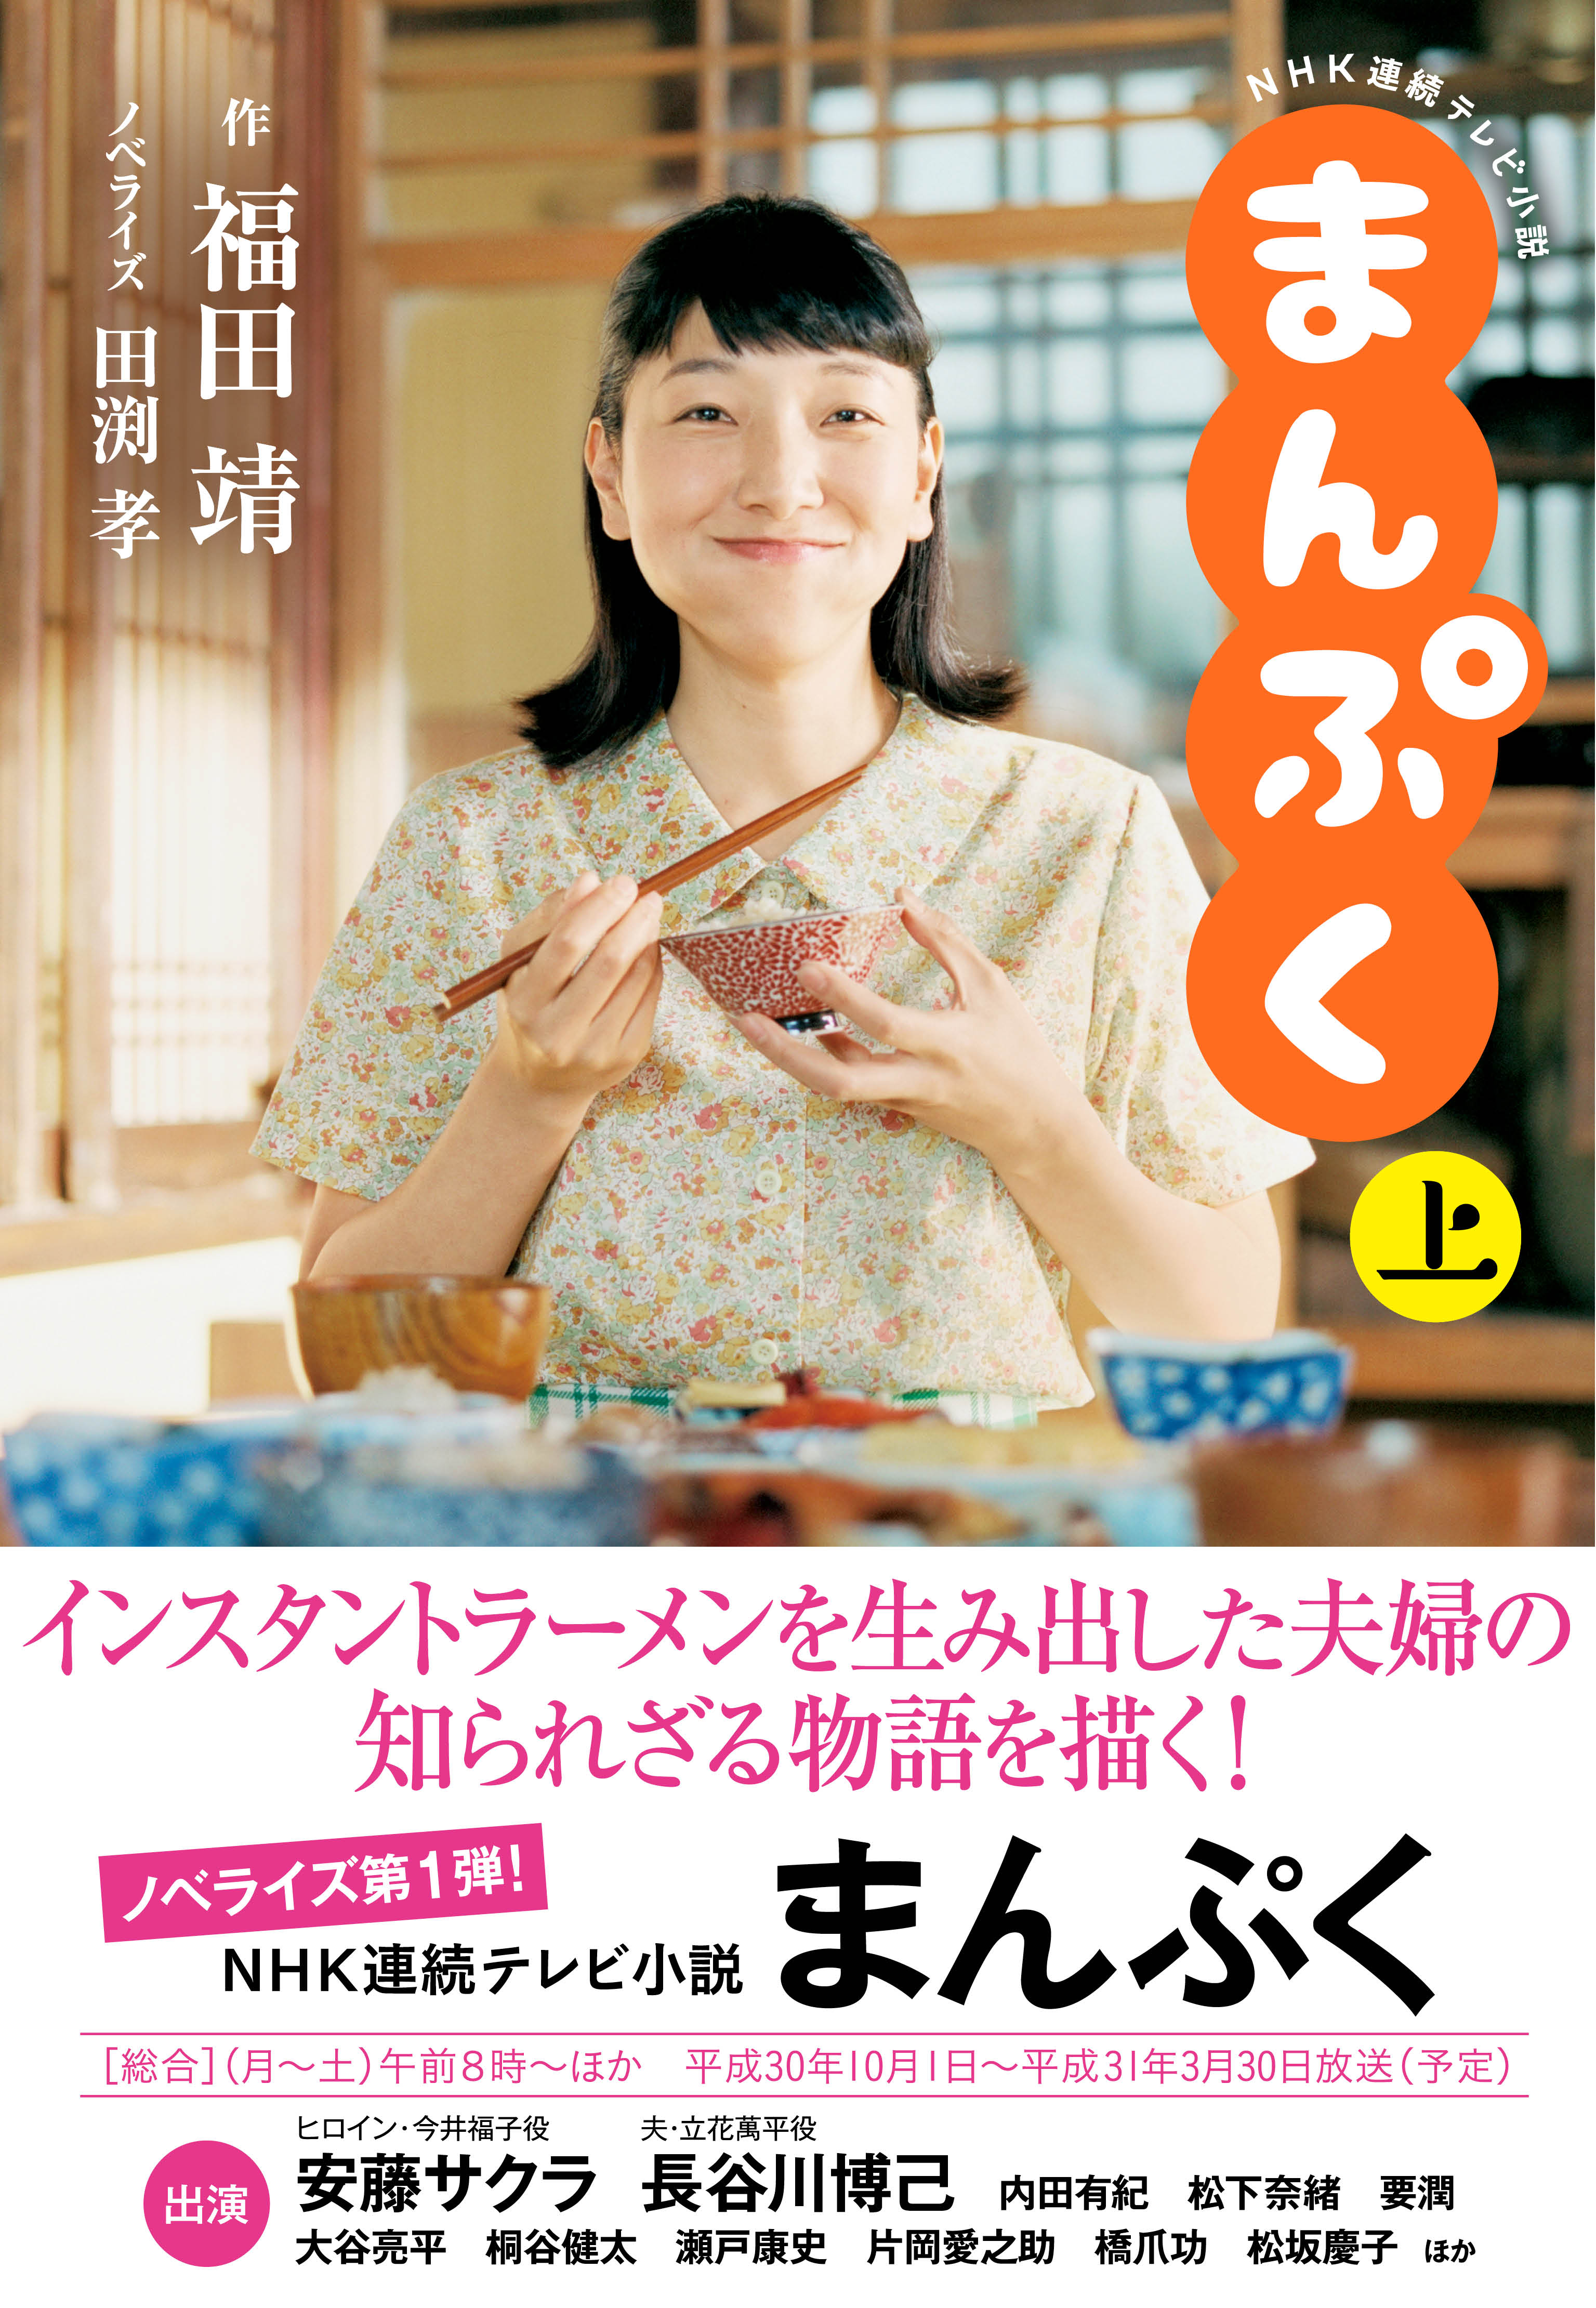 シニアファッション NHK NHK 連続テレビ小説 まんぷく 安藤サクラ DVD ...